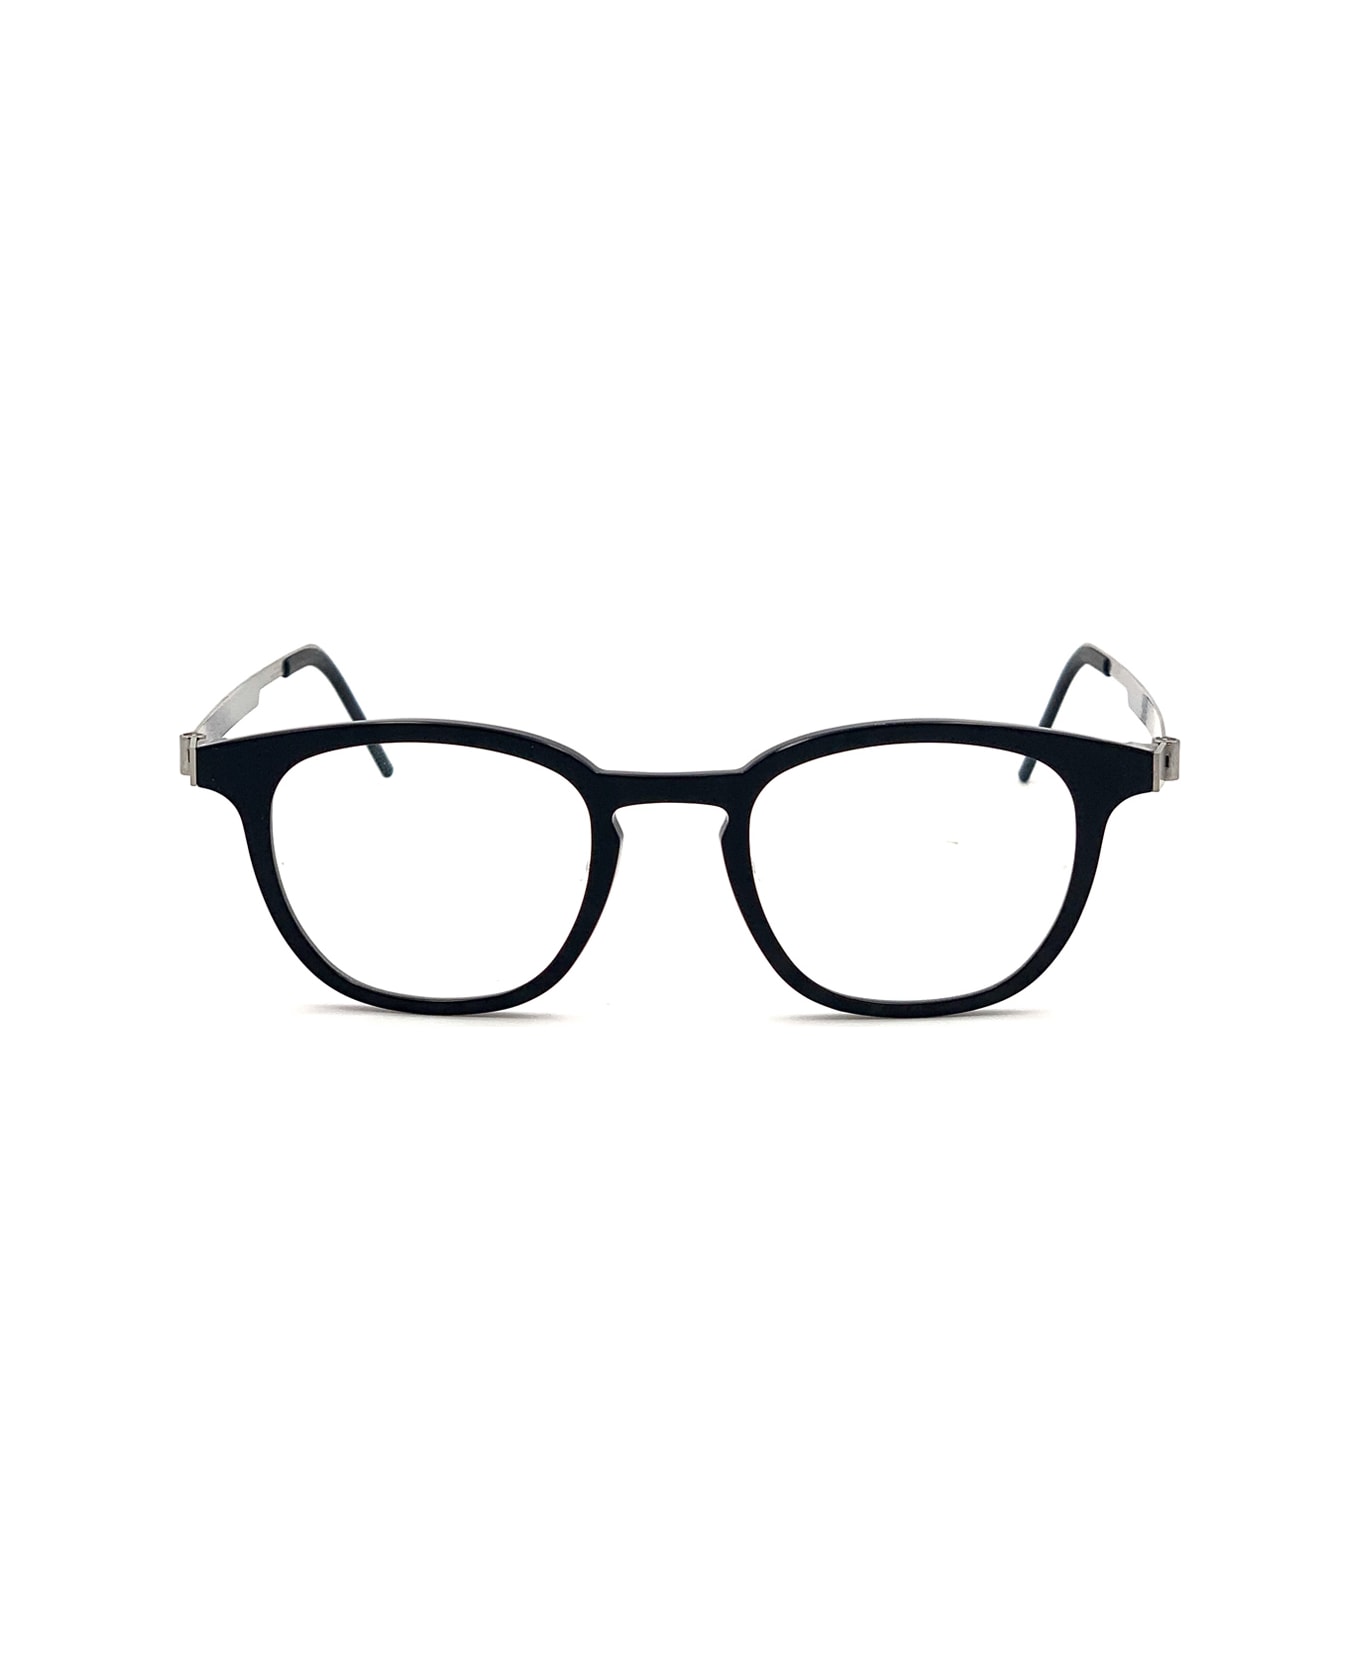 LINDBERG Acetanium 1051 Glasses - Nero